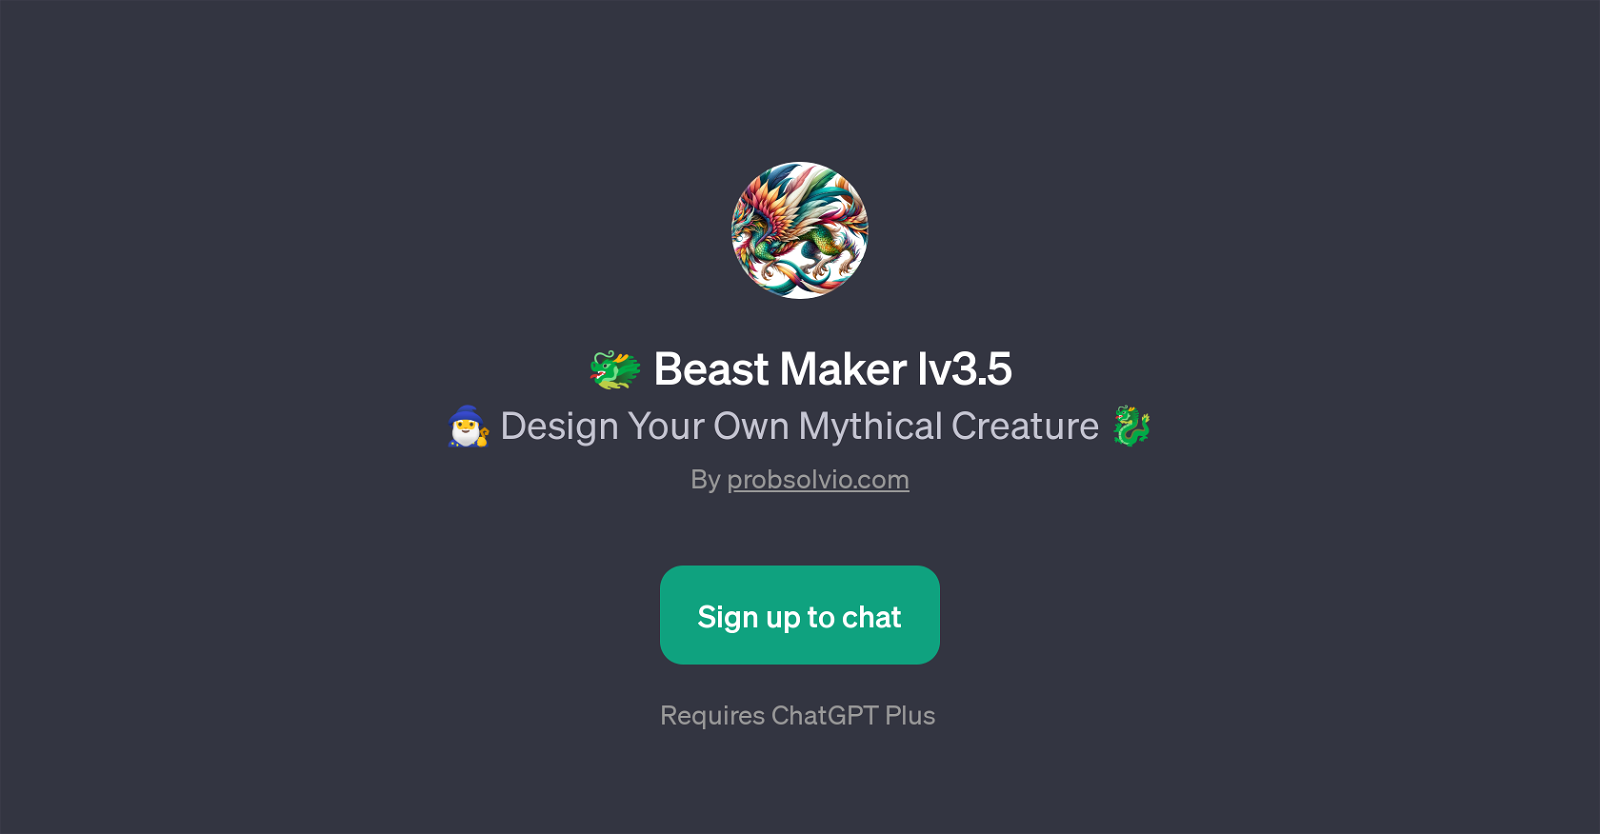 Beast Maker lv3.5 website